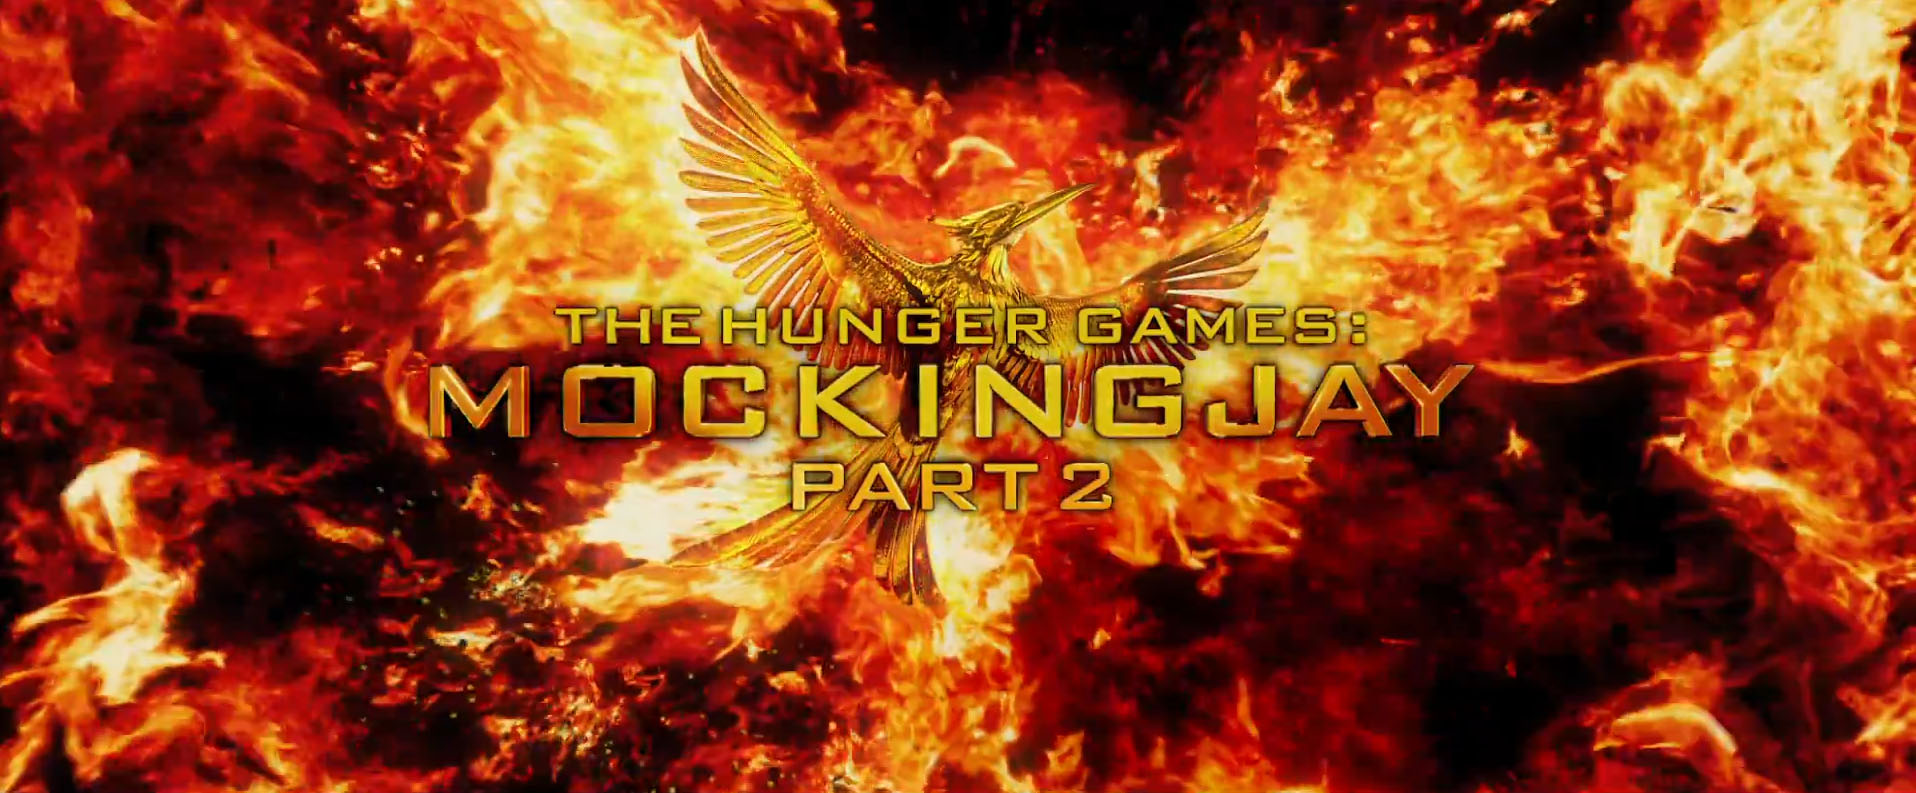 The Hunger Games Mockingjay Part 2 Motion Poster Logo Reveal Heyuguys